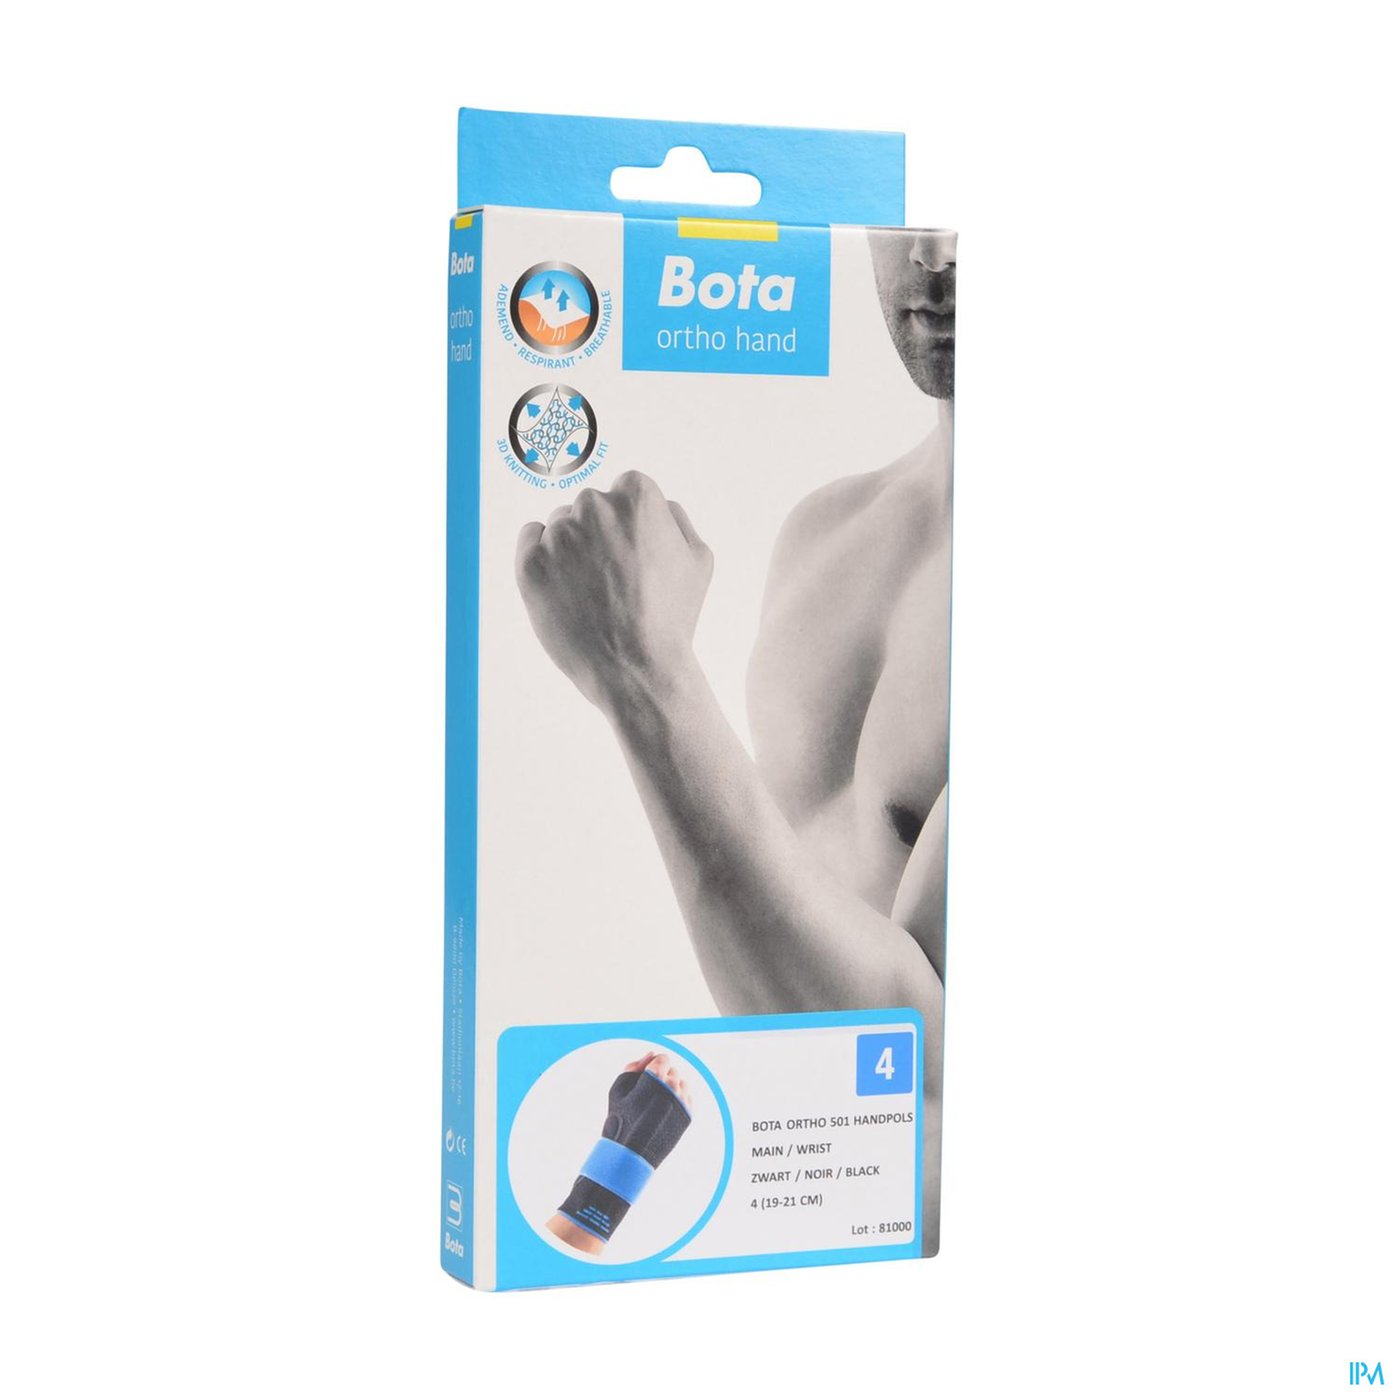 Bota Ortho Handpolsbandage 501 Zwart N4 packshot